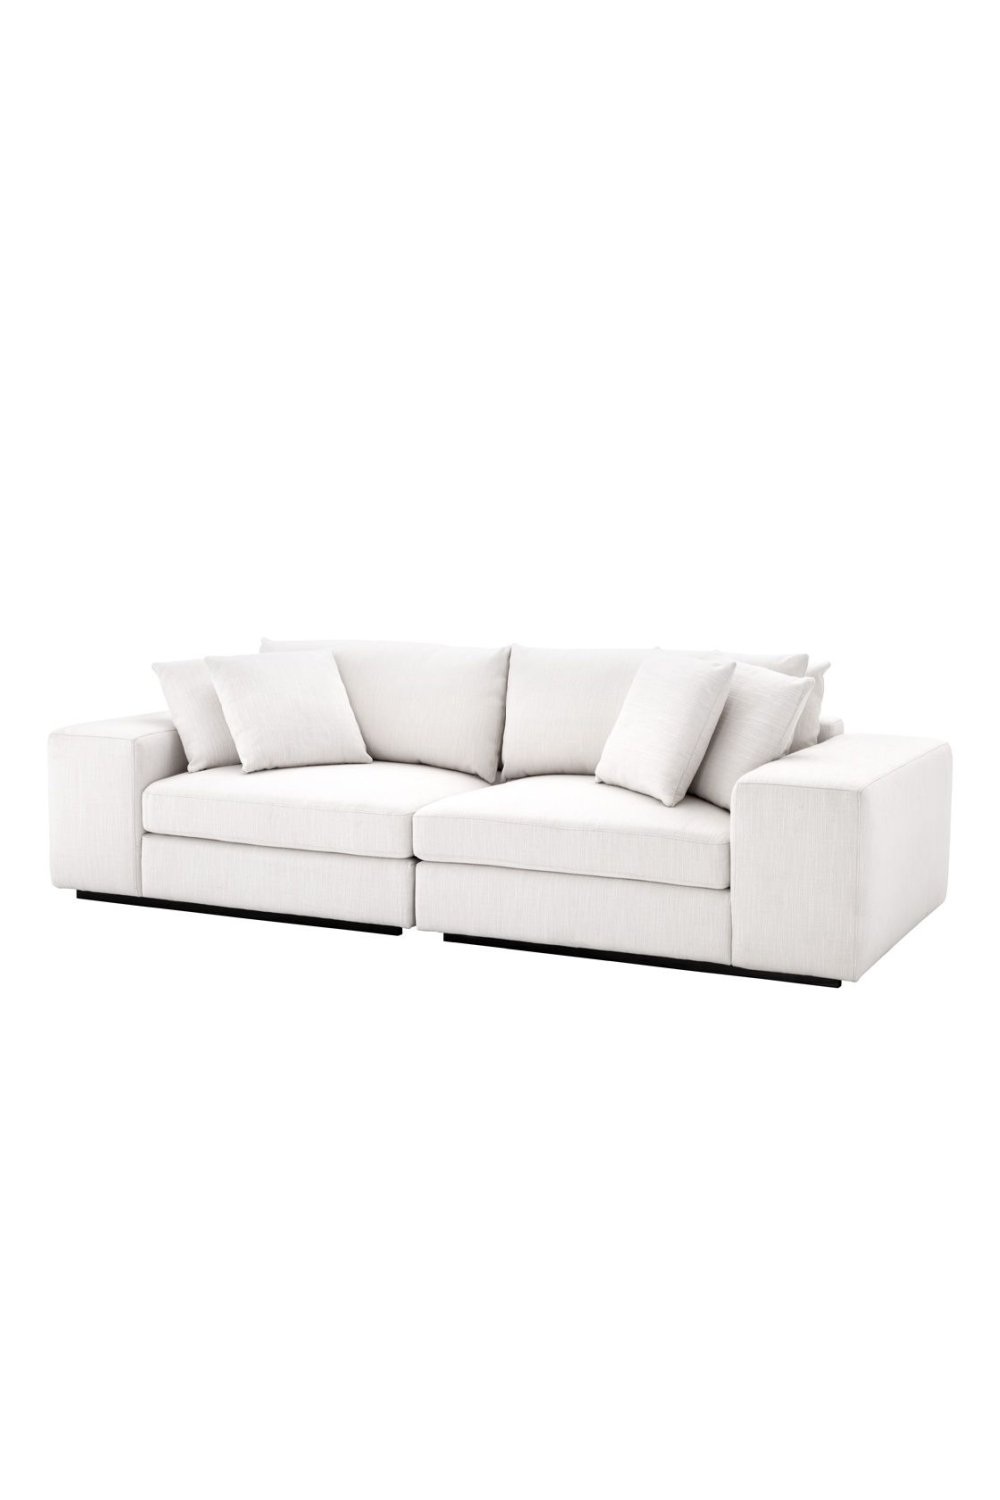 White Minimalist Sofa | Eichholtz Vista Grande | Oroa.com